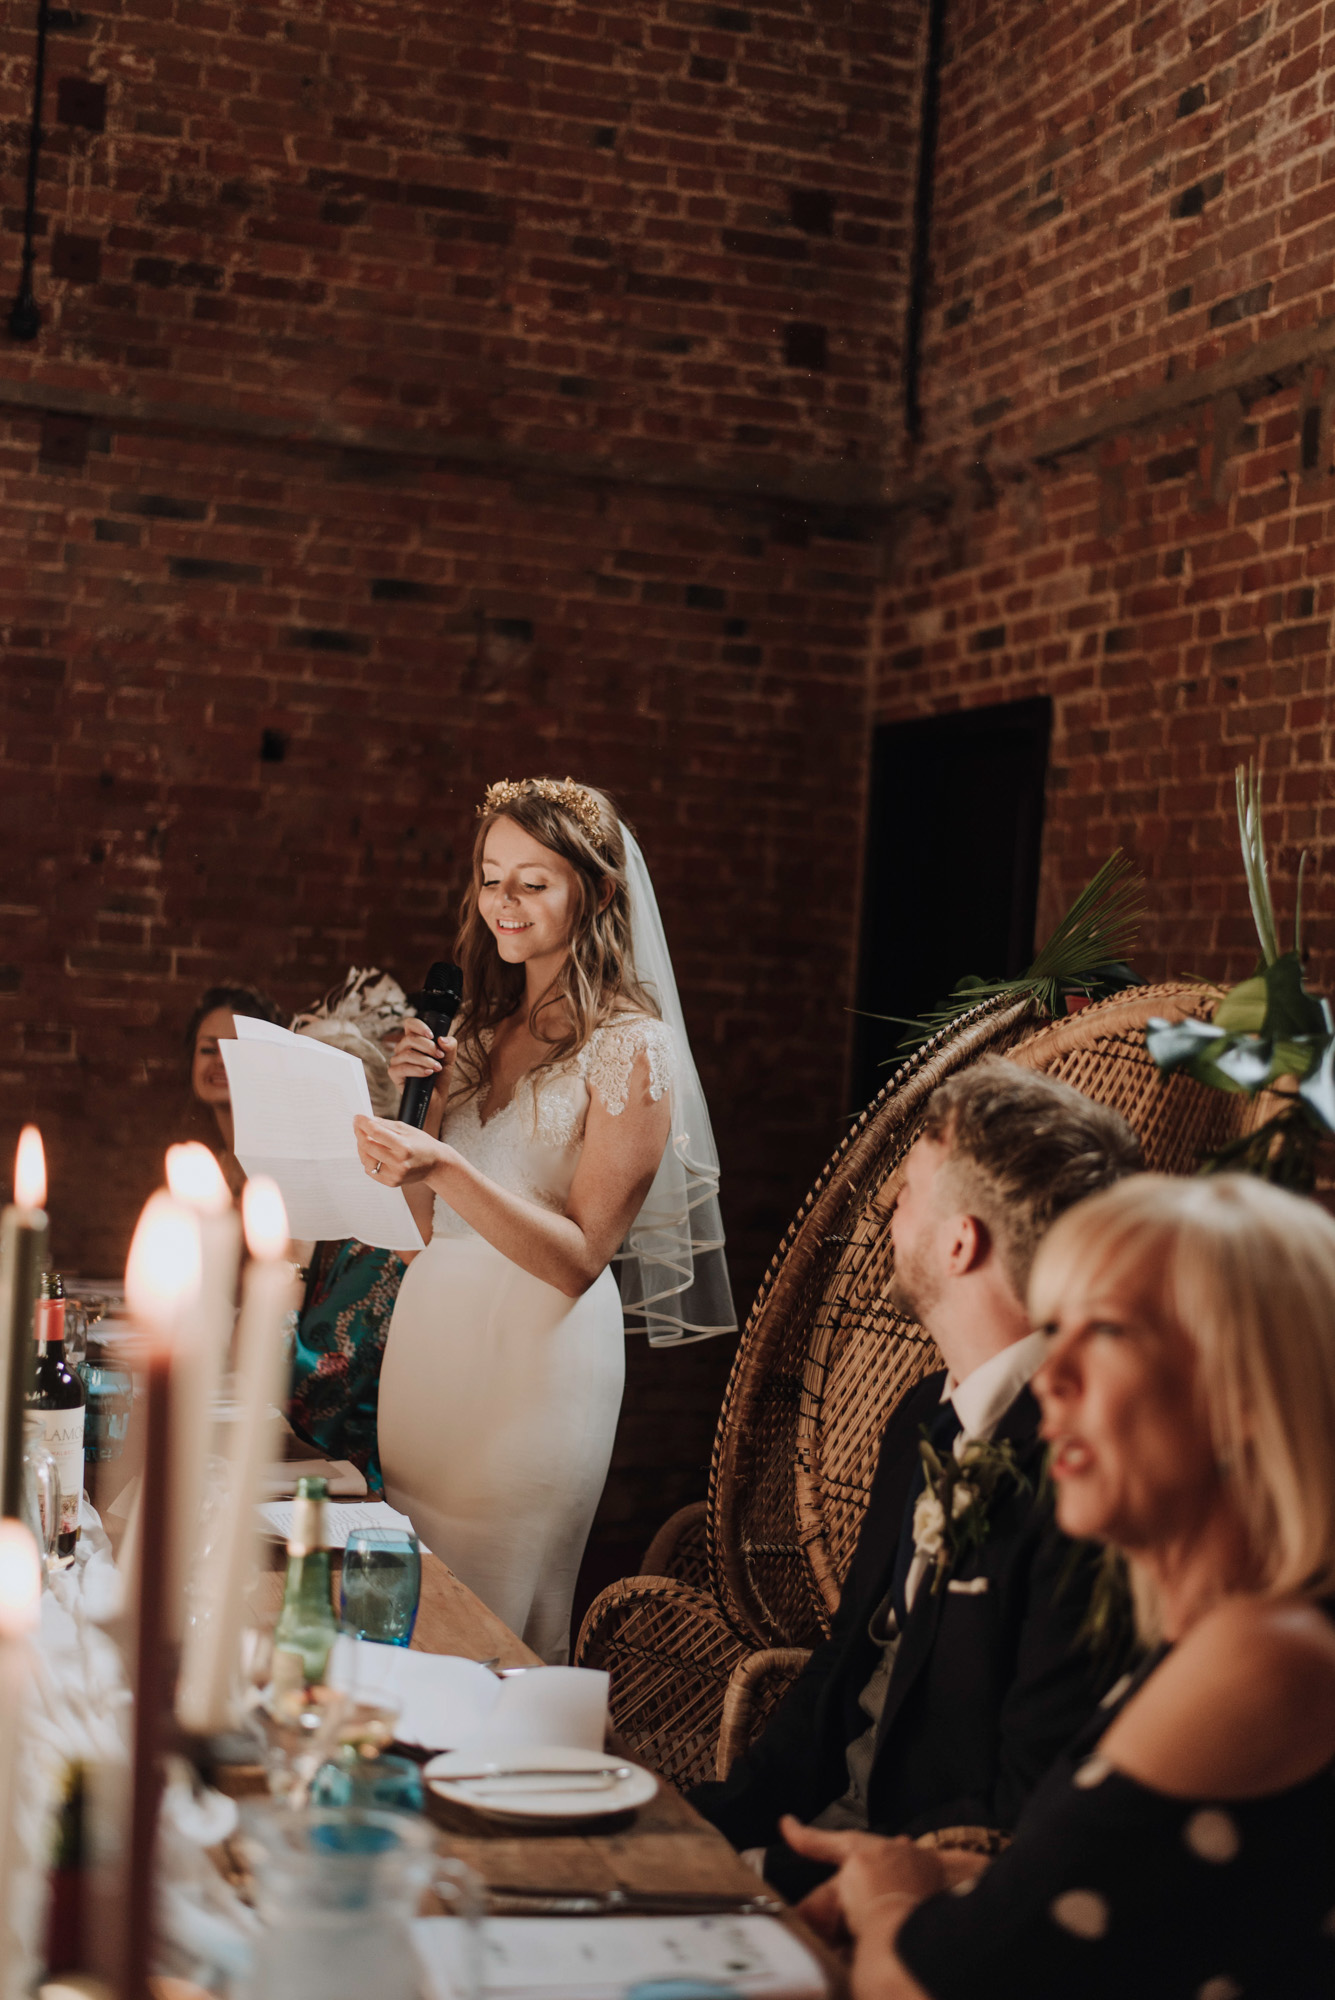 Bride giving a wedding speech